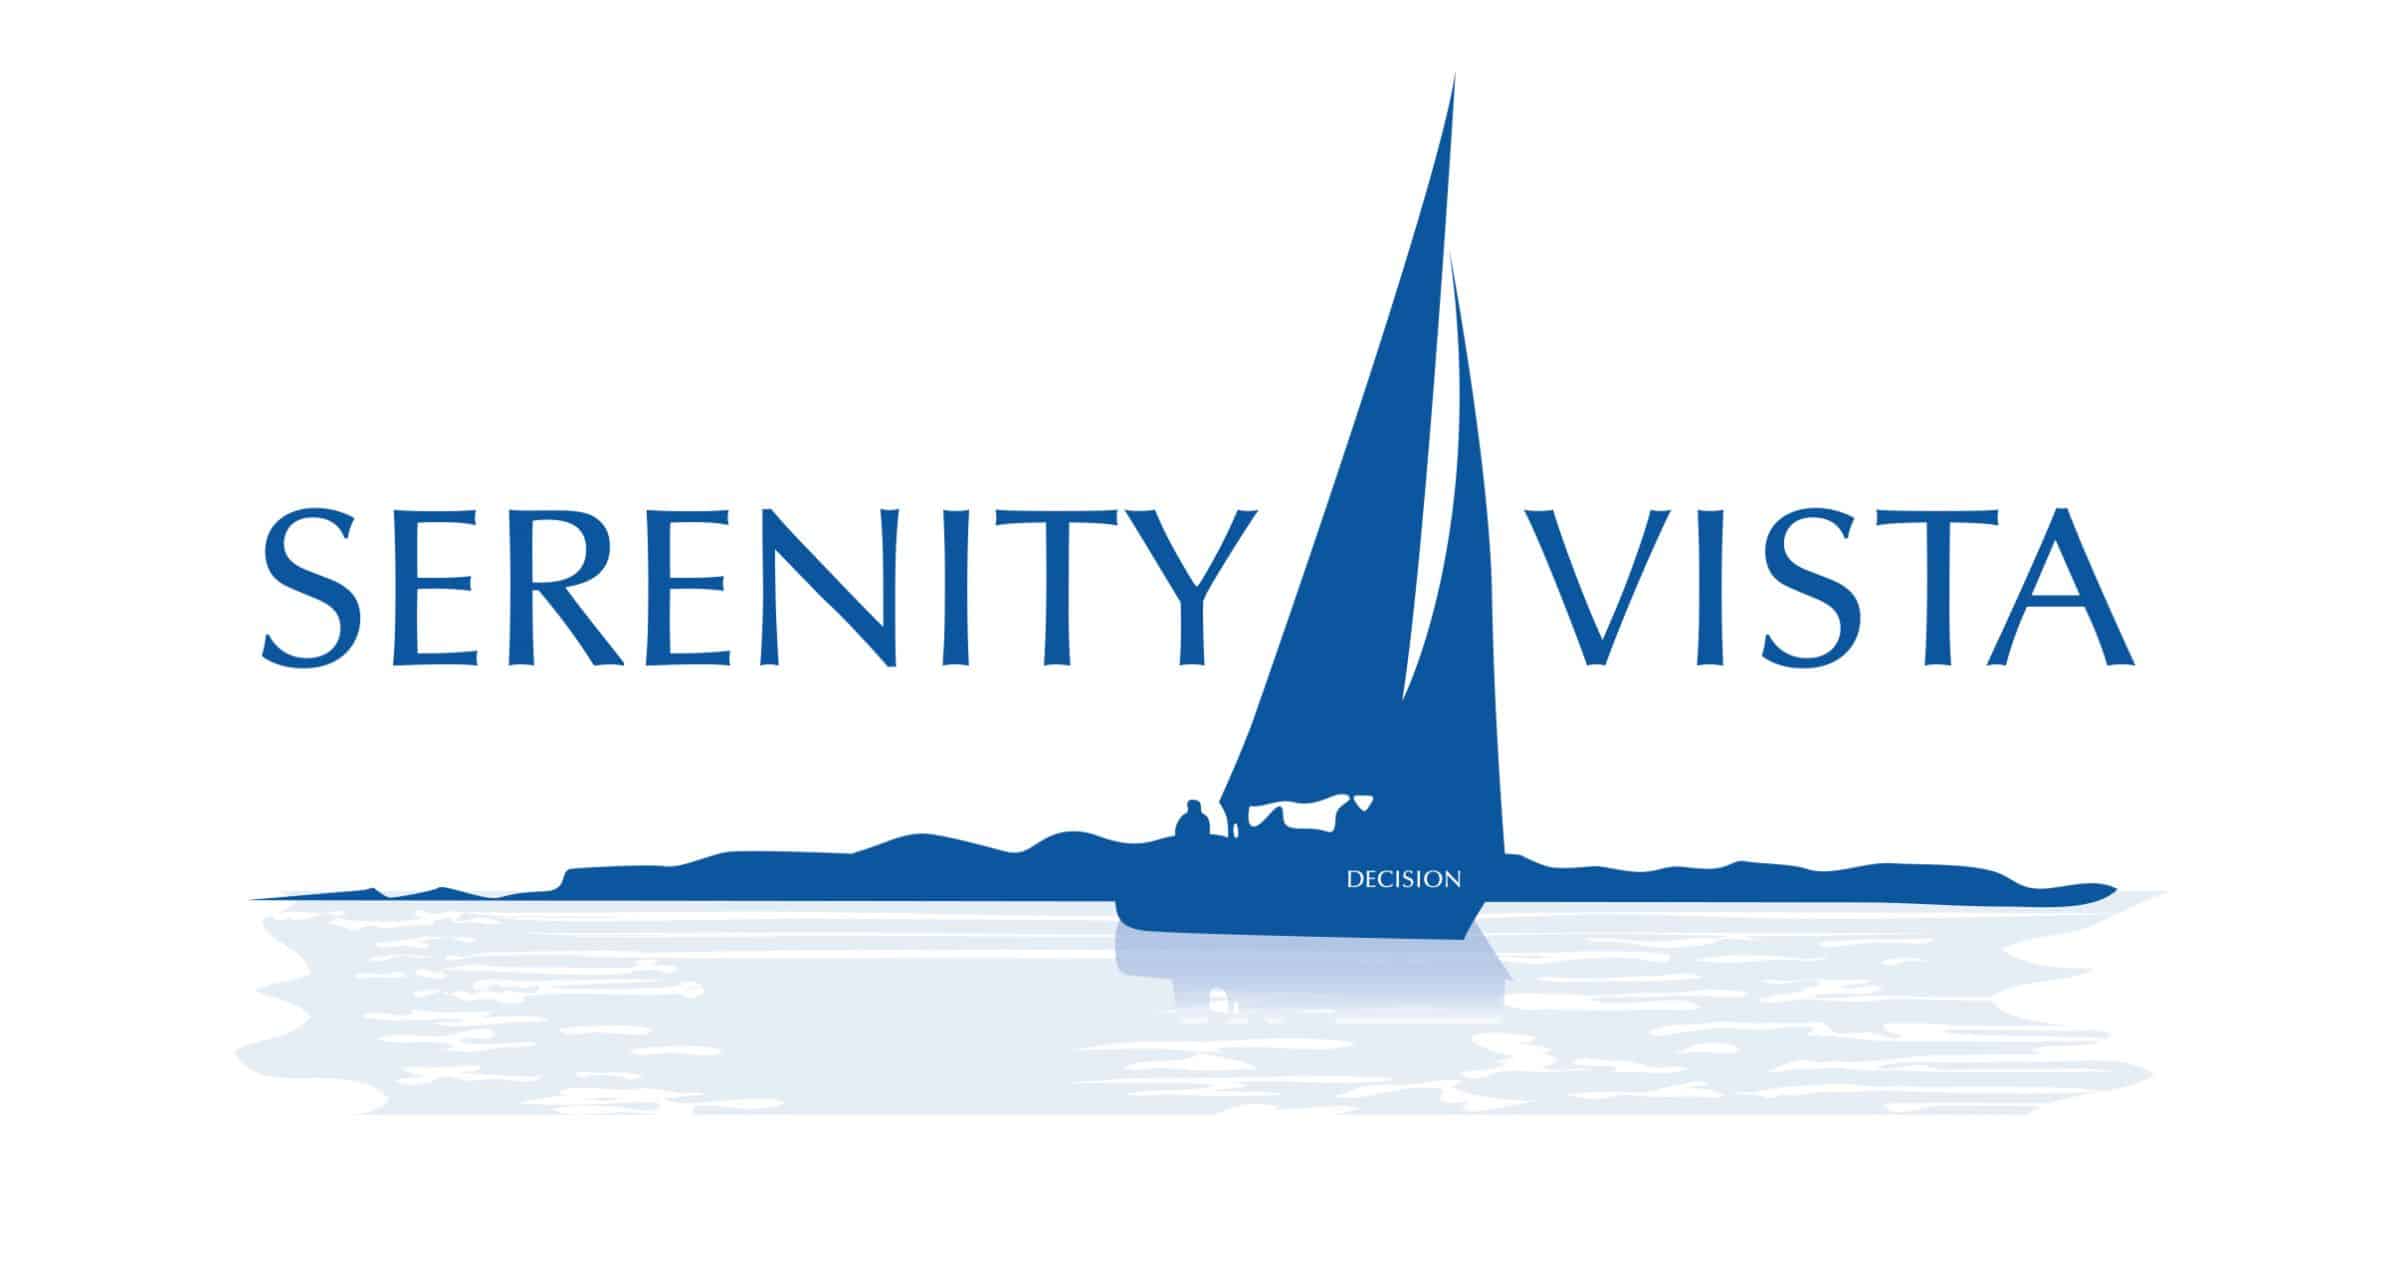 serenity-vista-logo